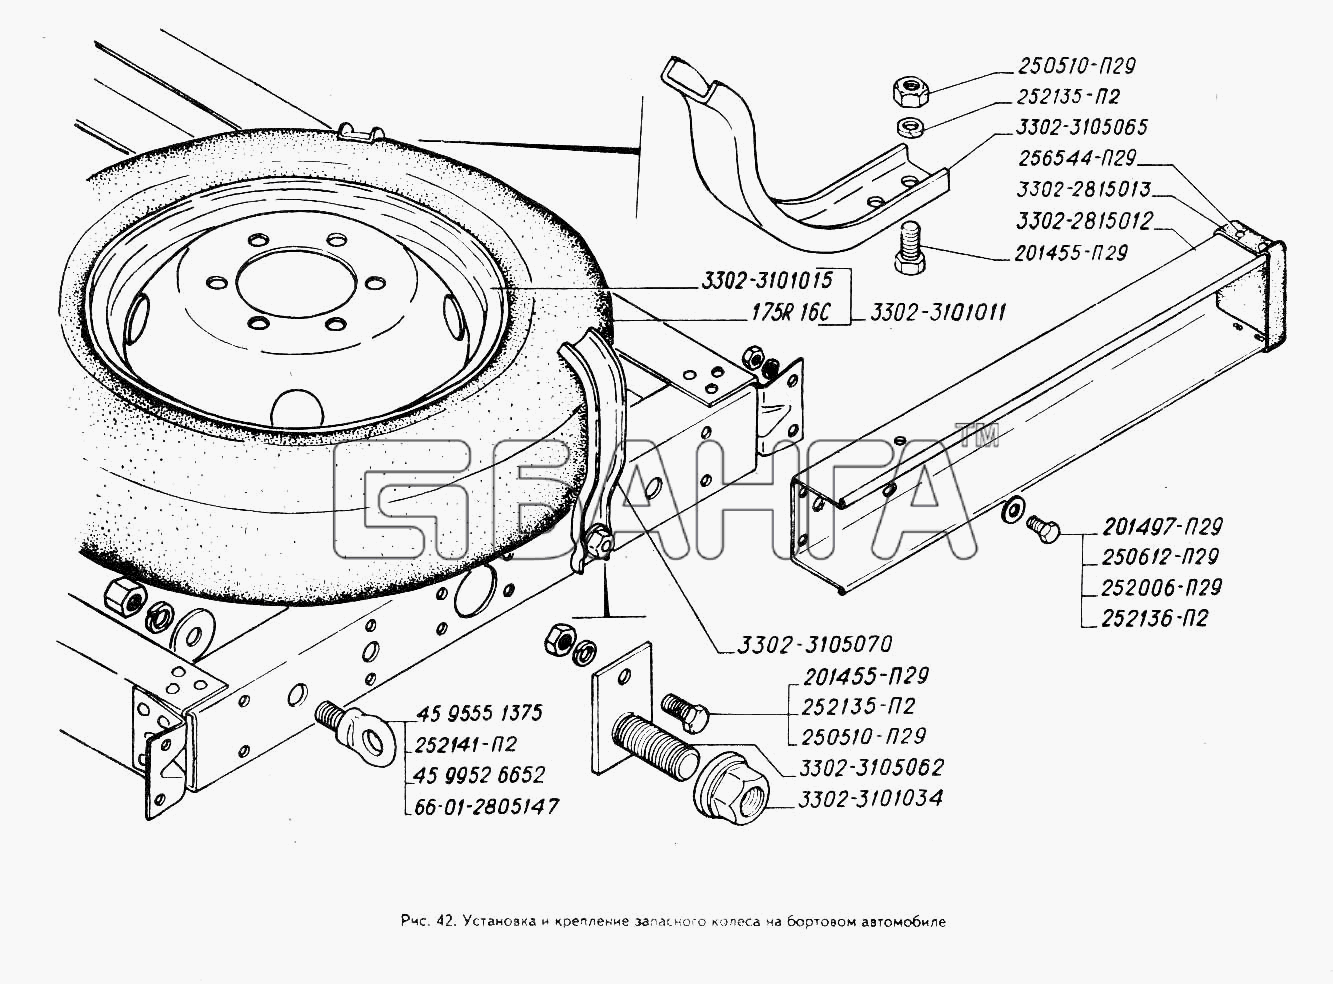 ГАЗ ГАЗ-3302 (ГАЗель) Схема Установка и крепление запасного колеса на